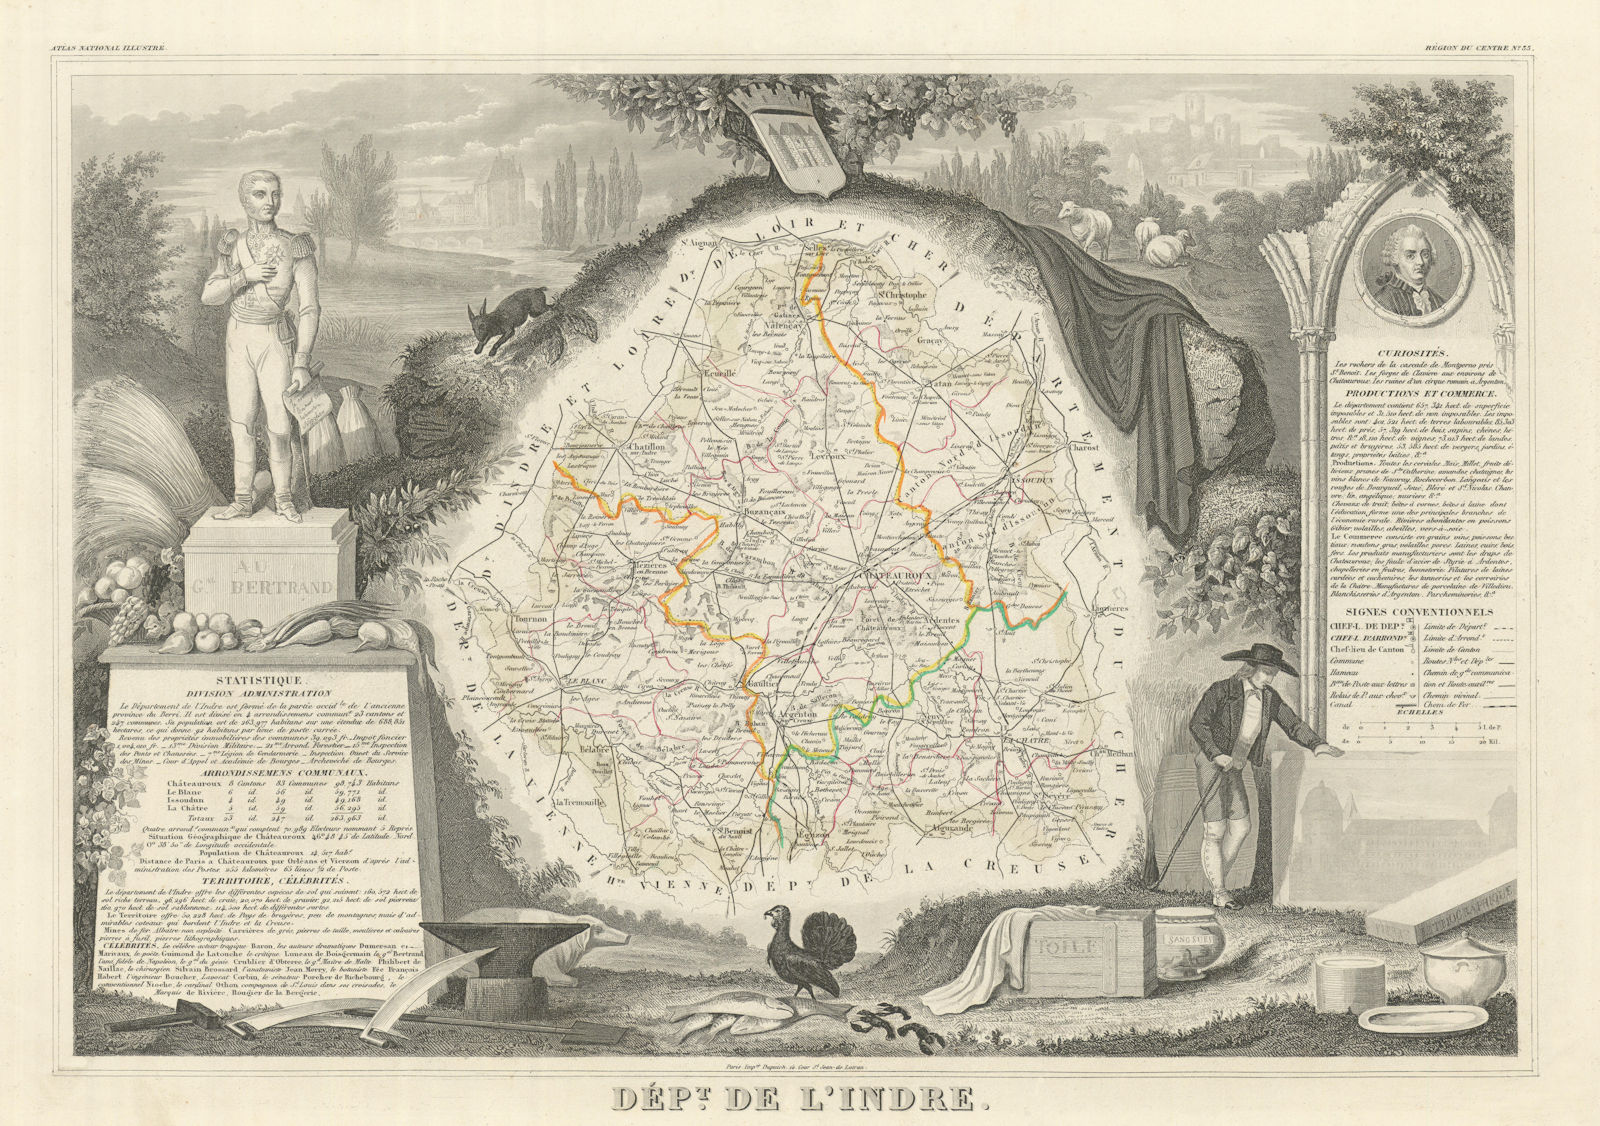 Département de l'INDRE. Decorative antique map/carte by Victor LEVASSEUR 1856